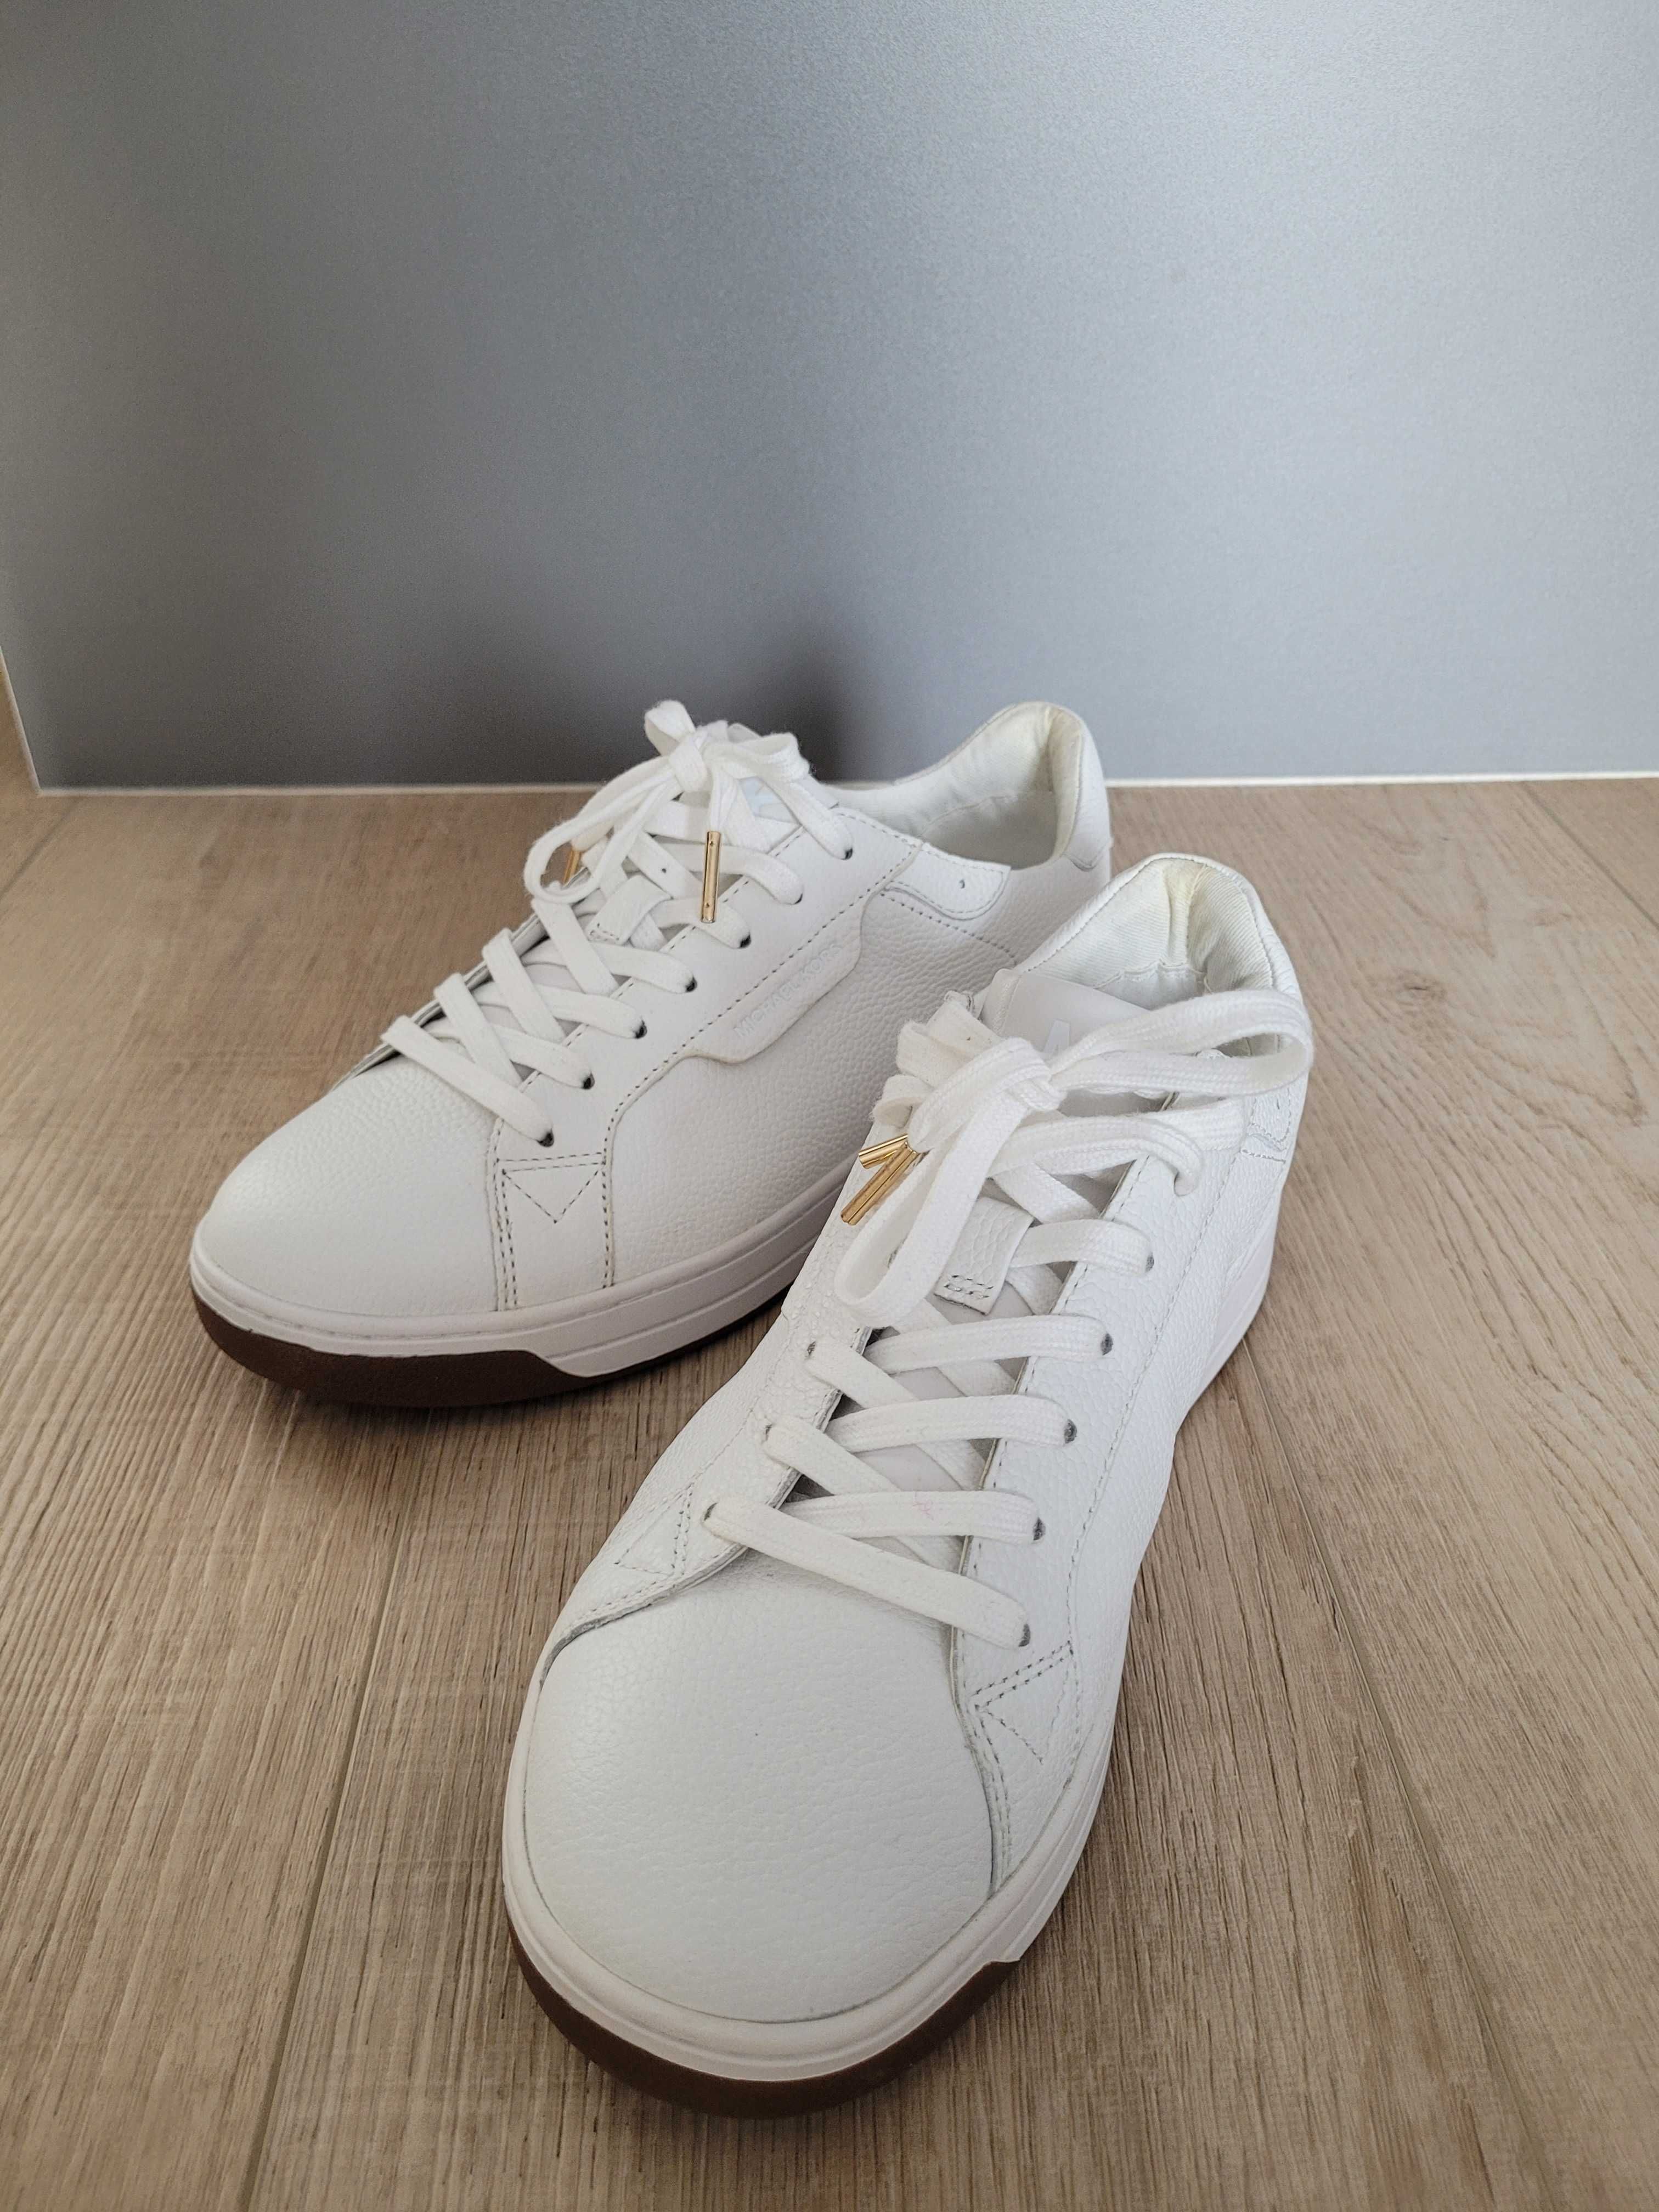 Buty Michael Kors 37,5 białe trampki sneakersy